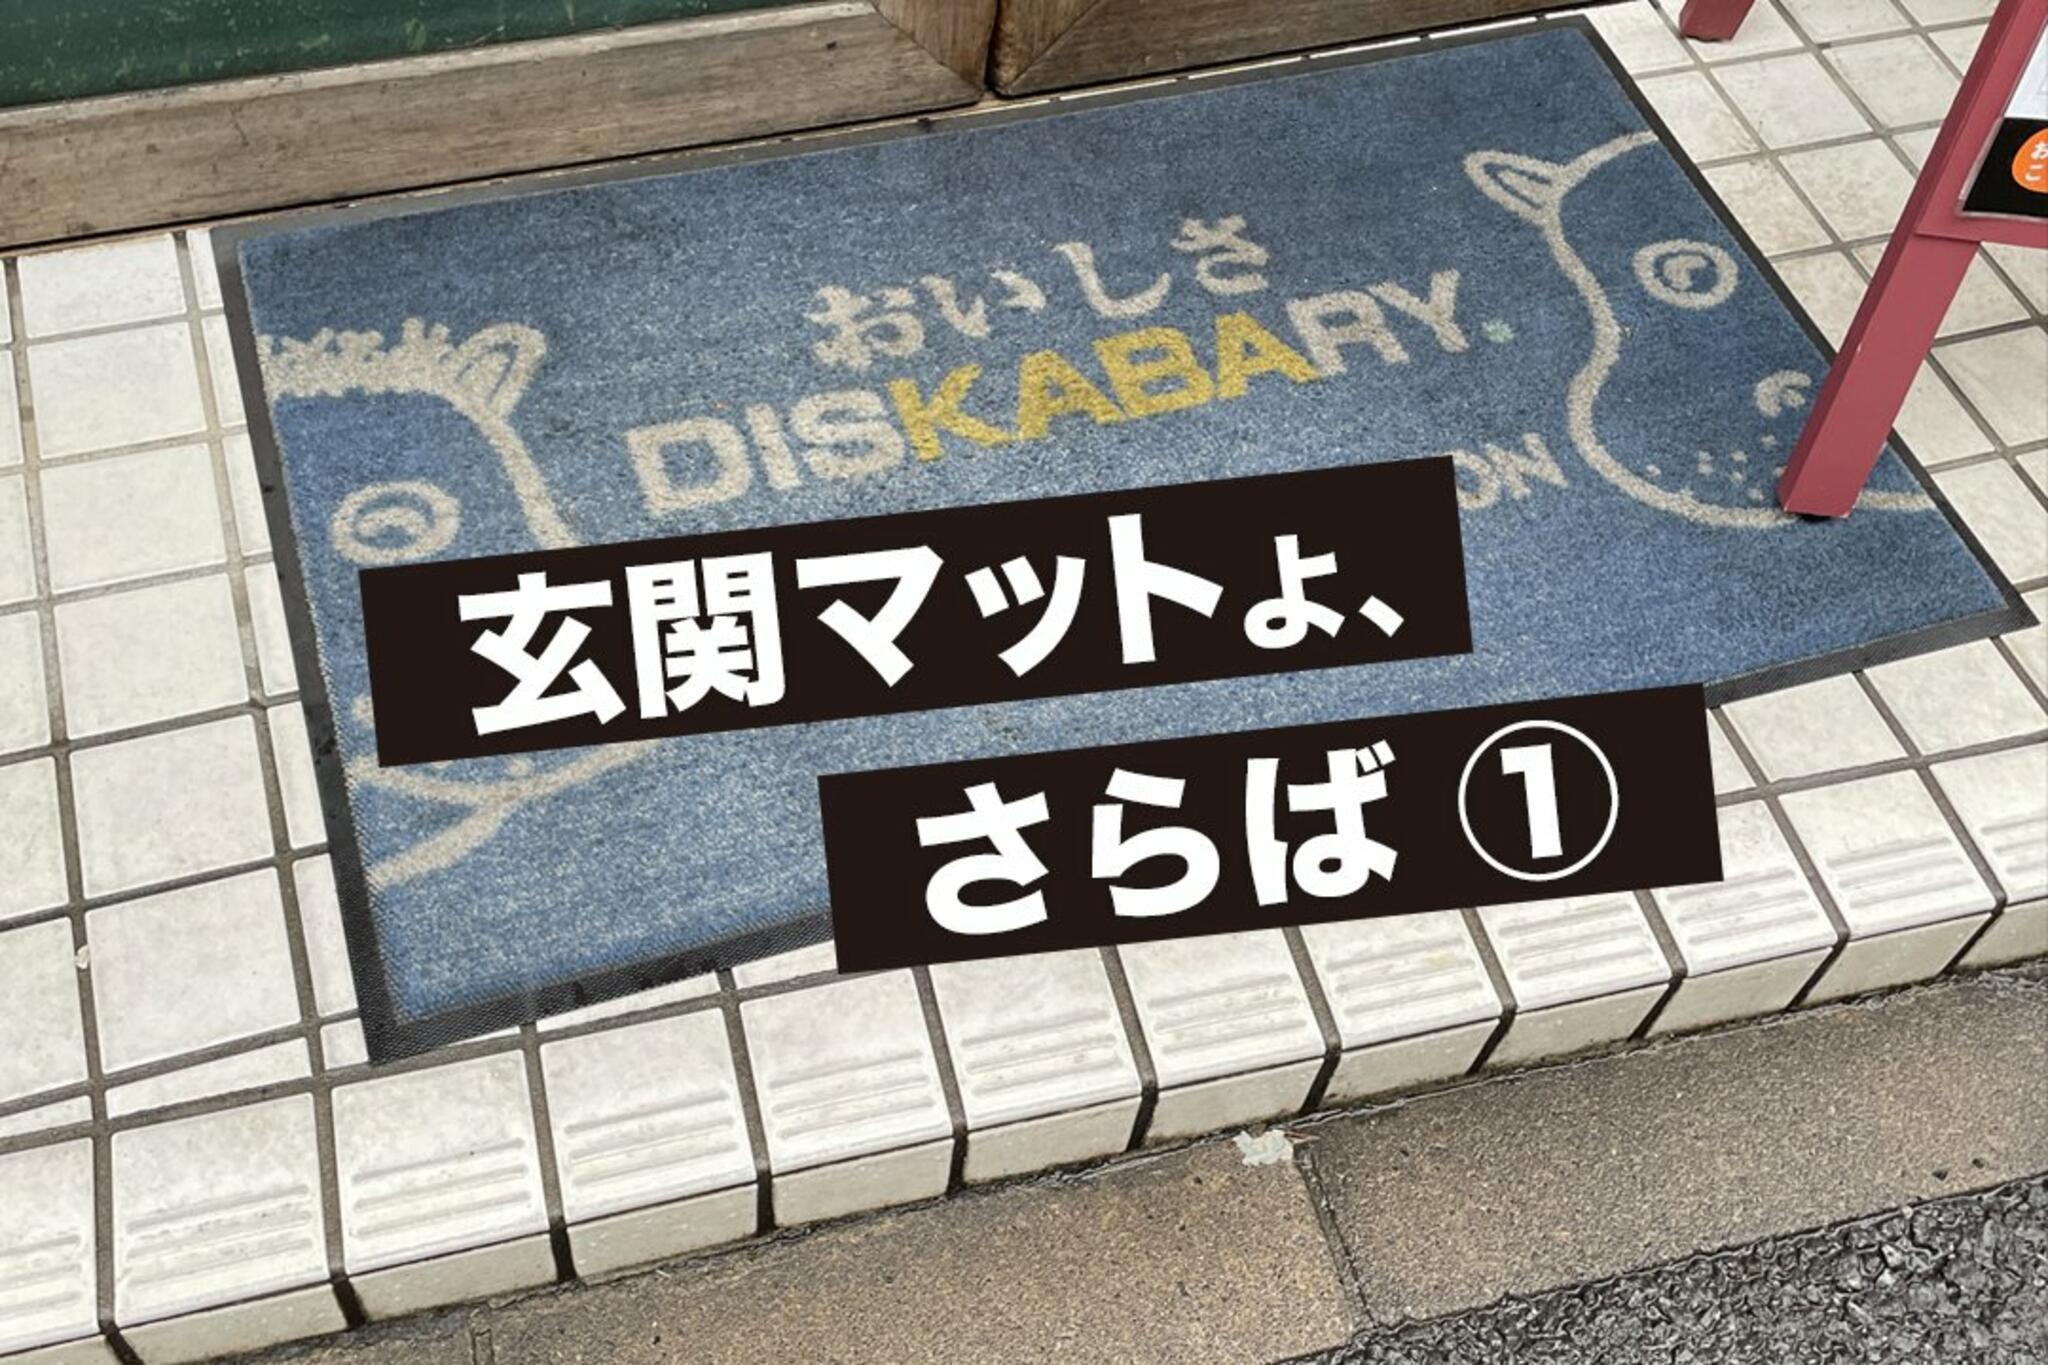 かばのおうどん 横浜元町本店からのお知らせ(約5年間使ってきた玄関マットを一新！)に関する写真